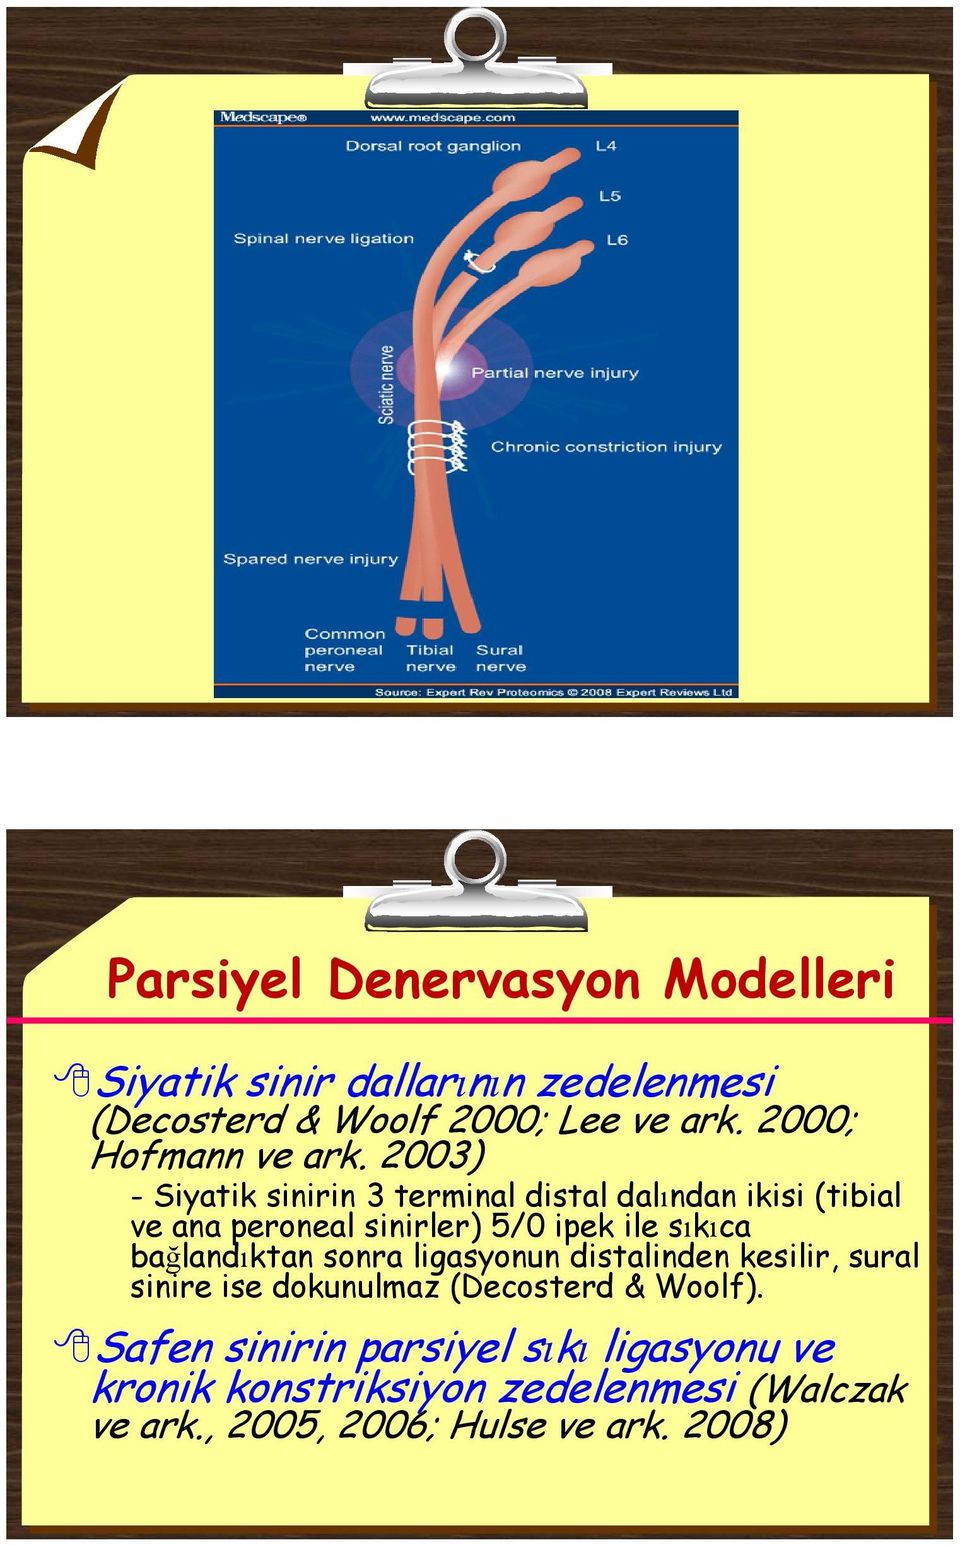 2003) - Siyatik sinirin 3 terminal distal dalından ikisi (tibial ve ana peroneal sinirler) 5/0 ipek ile sıkıca